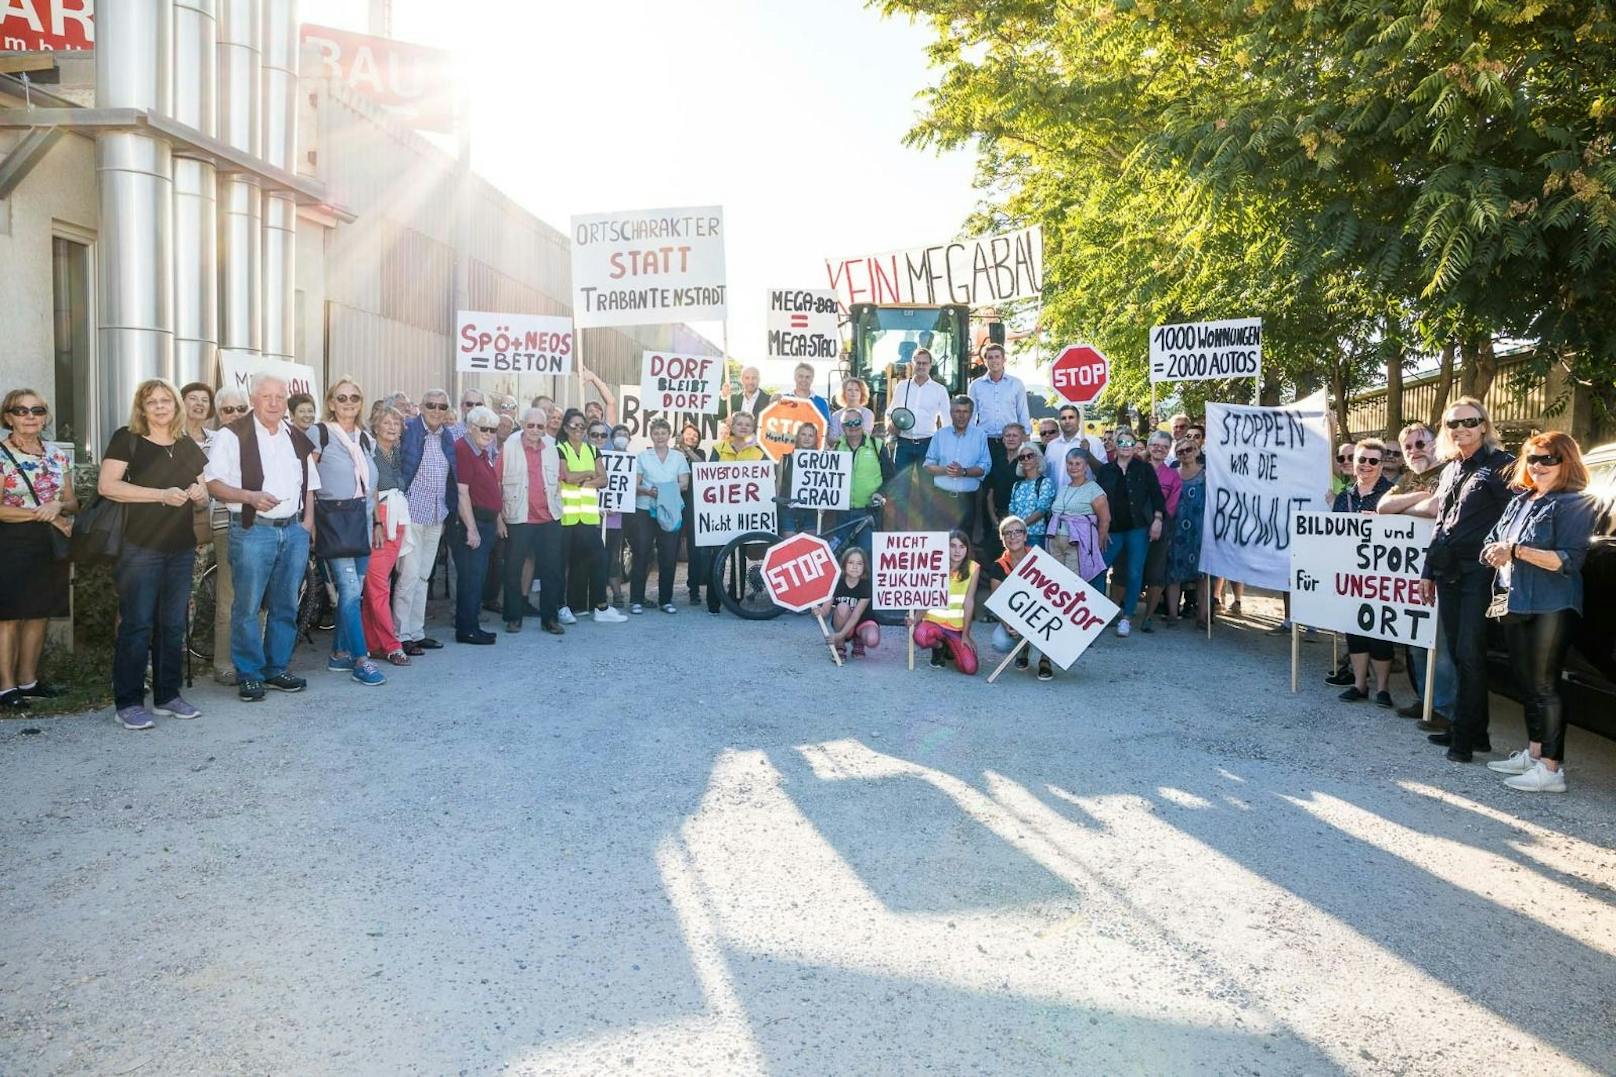 Großer Protest gegen Wohnbauprojekt in Brunn